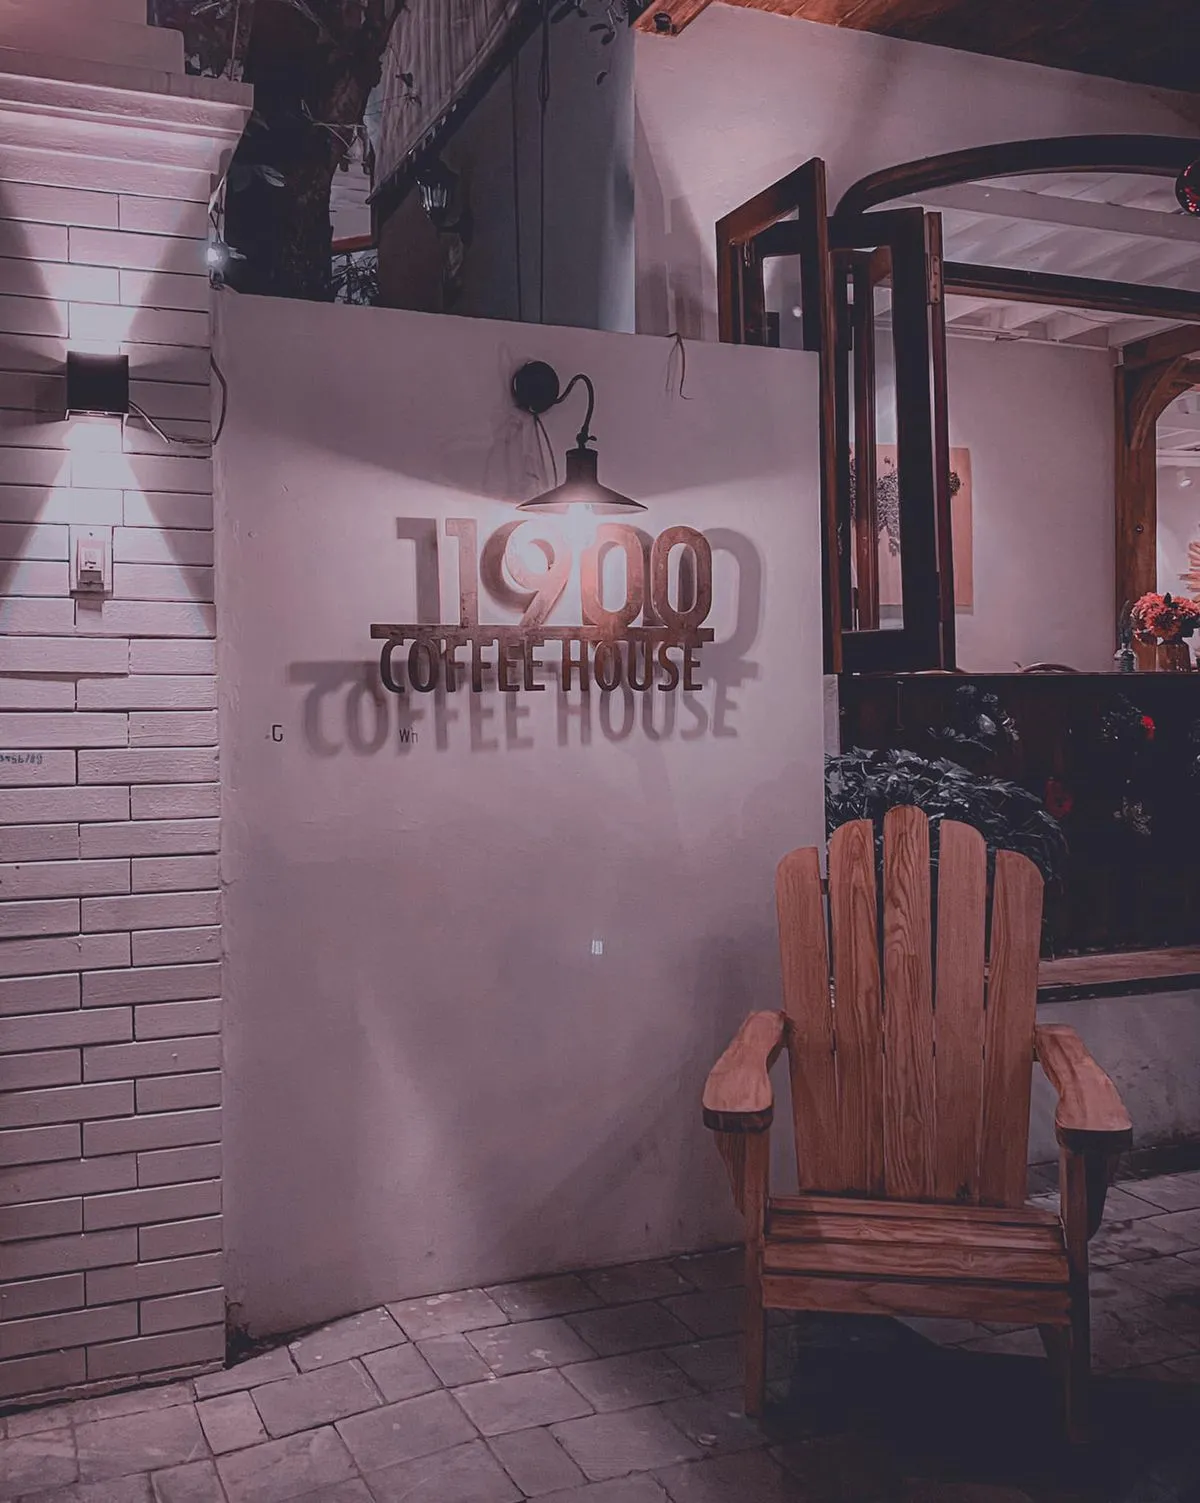 Bình dị 1900 Coffee House – Quán cà phê với đồ nội thất gỗ quen thuộc